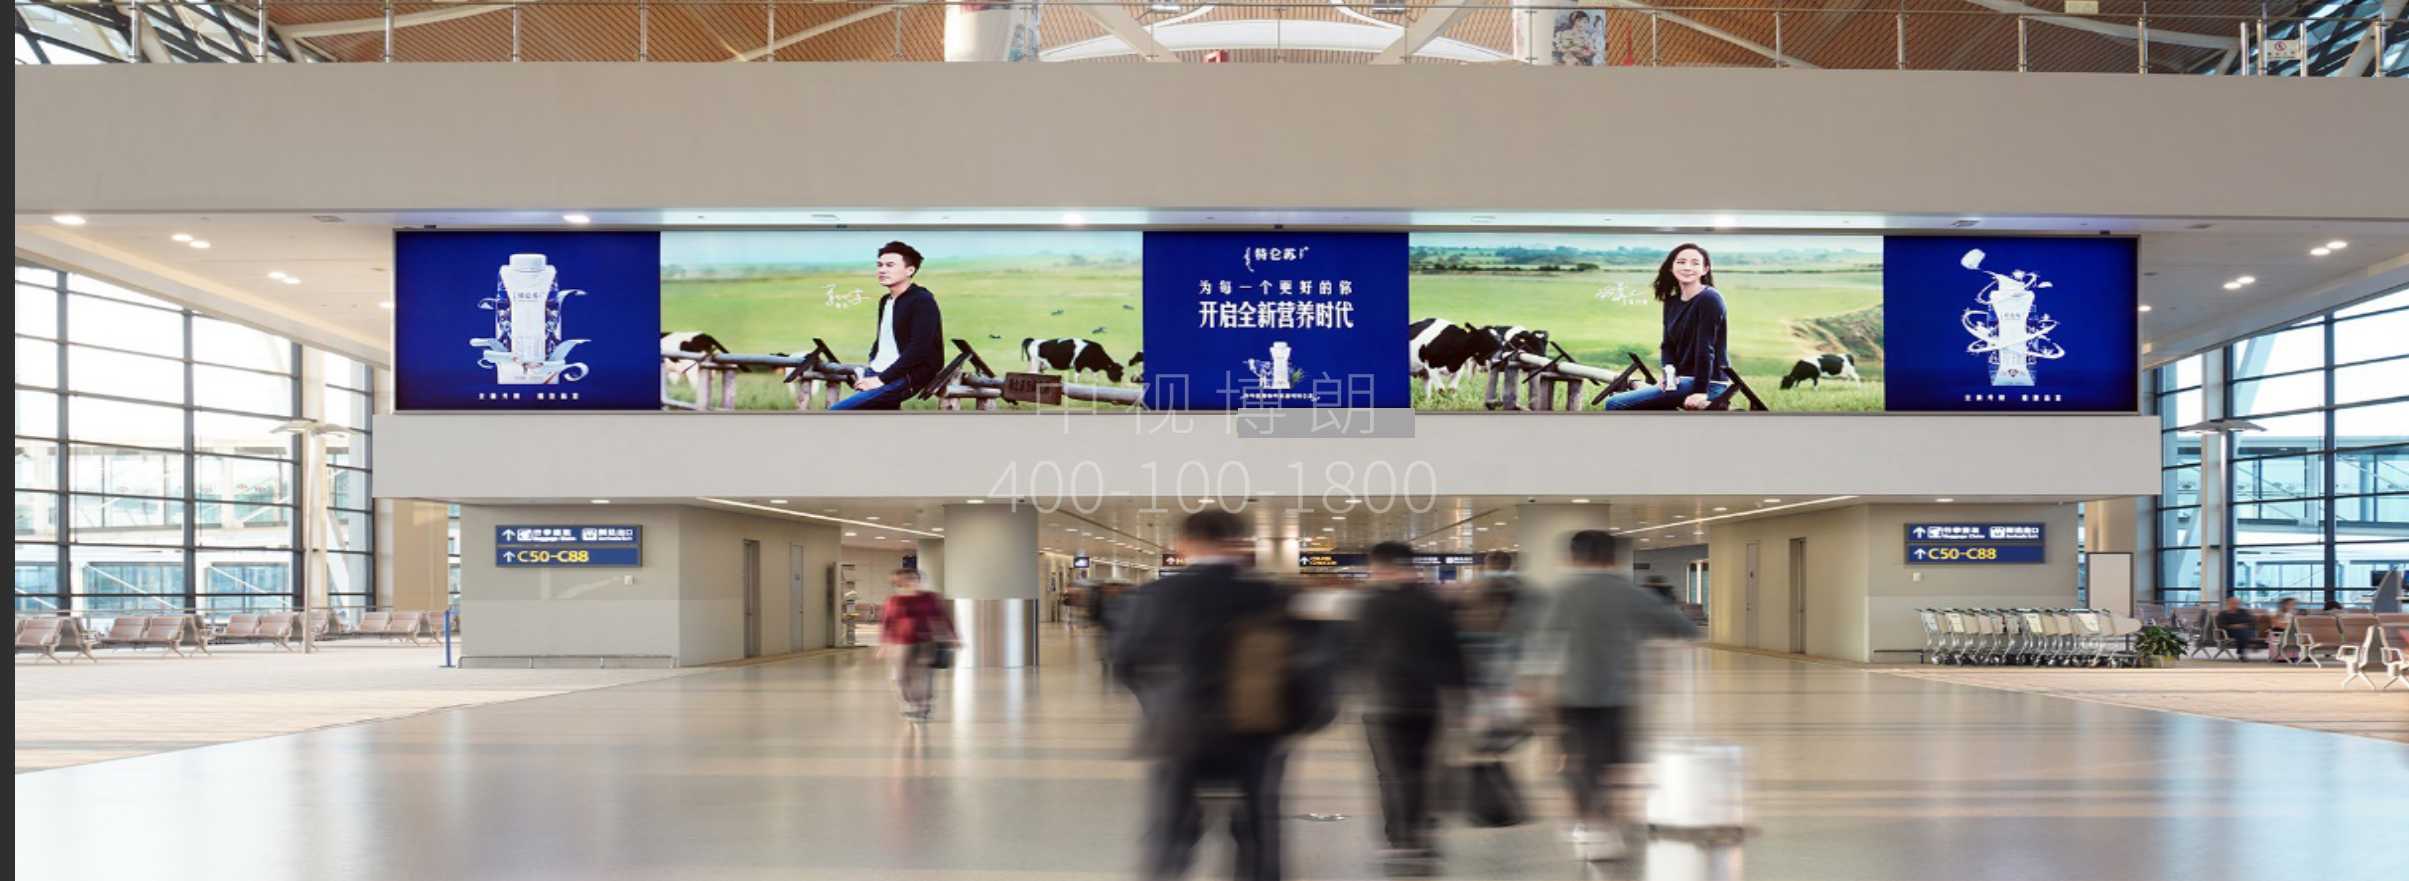 上海机场广告-浦东T2到达大厅巨型灯箱套装